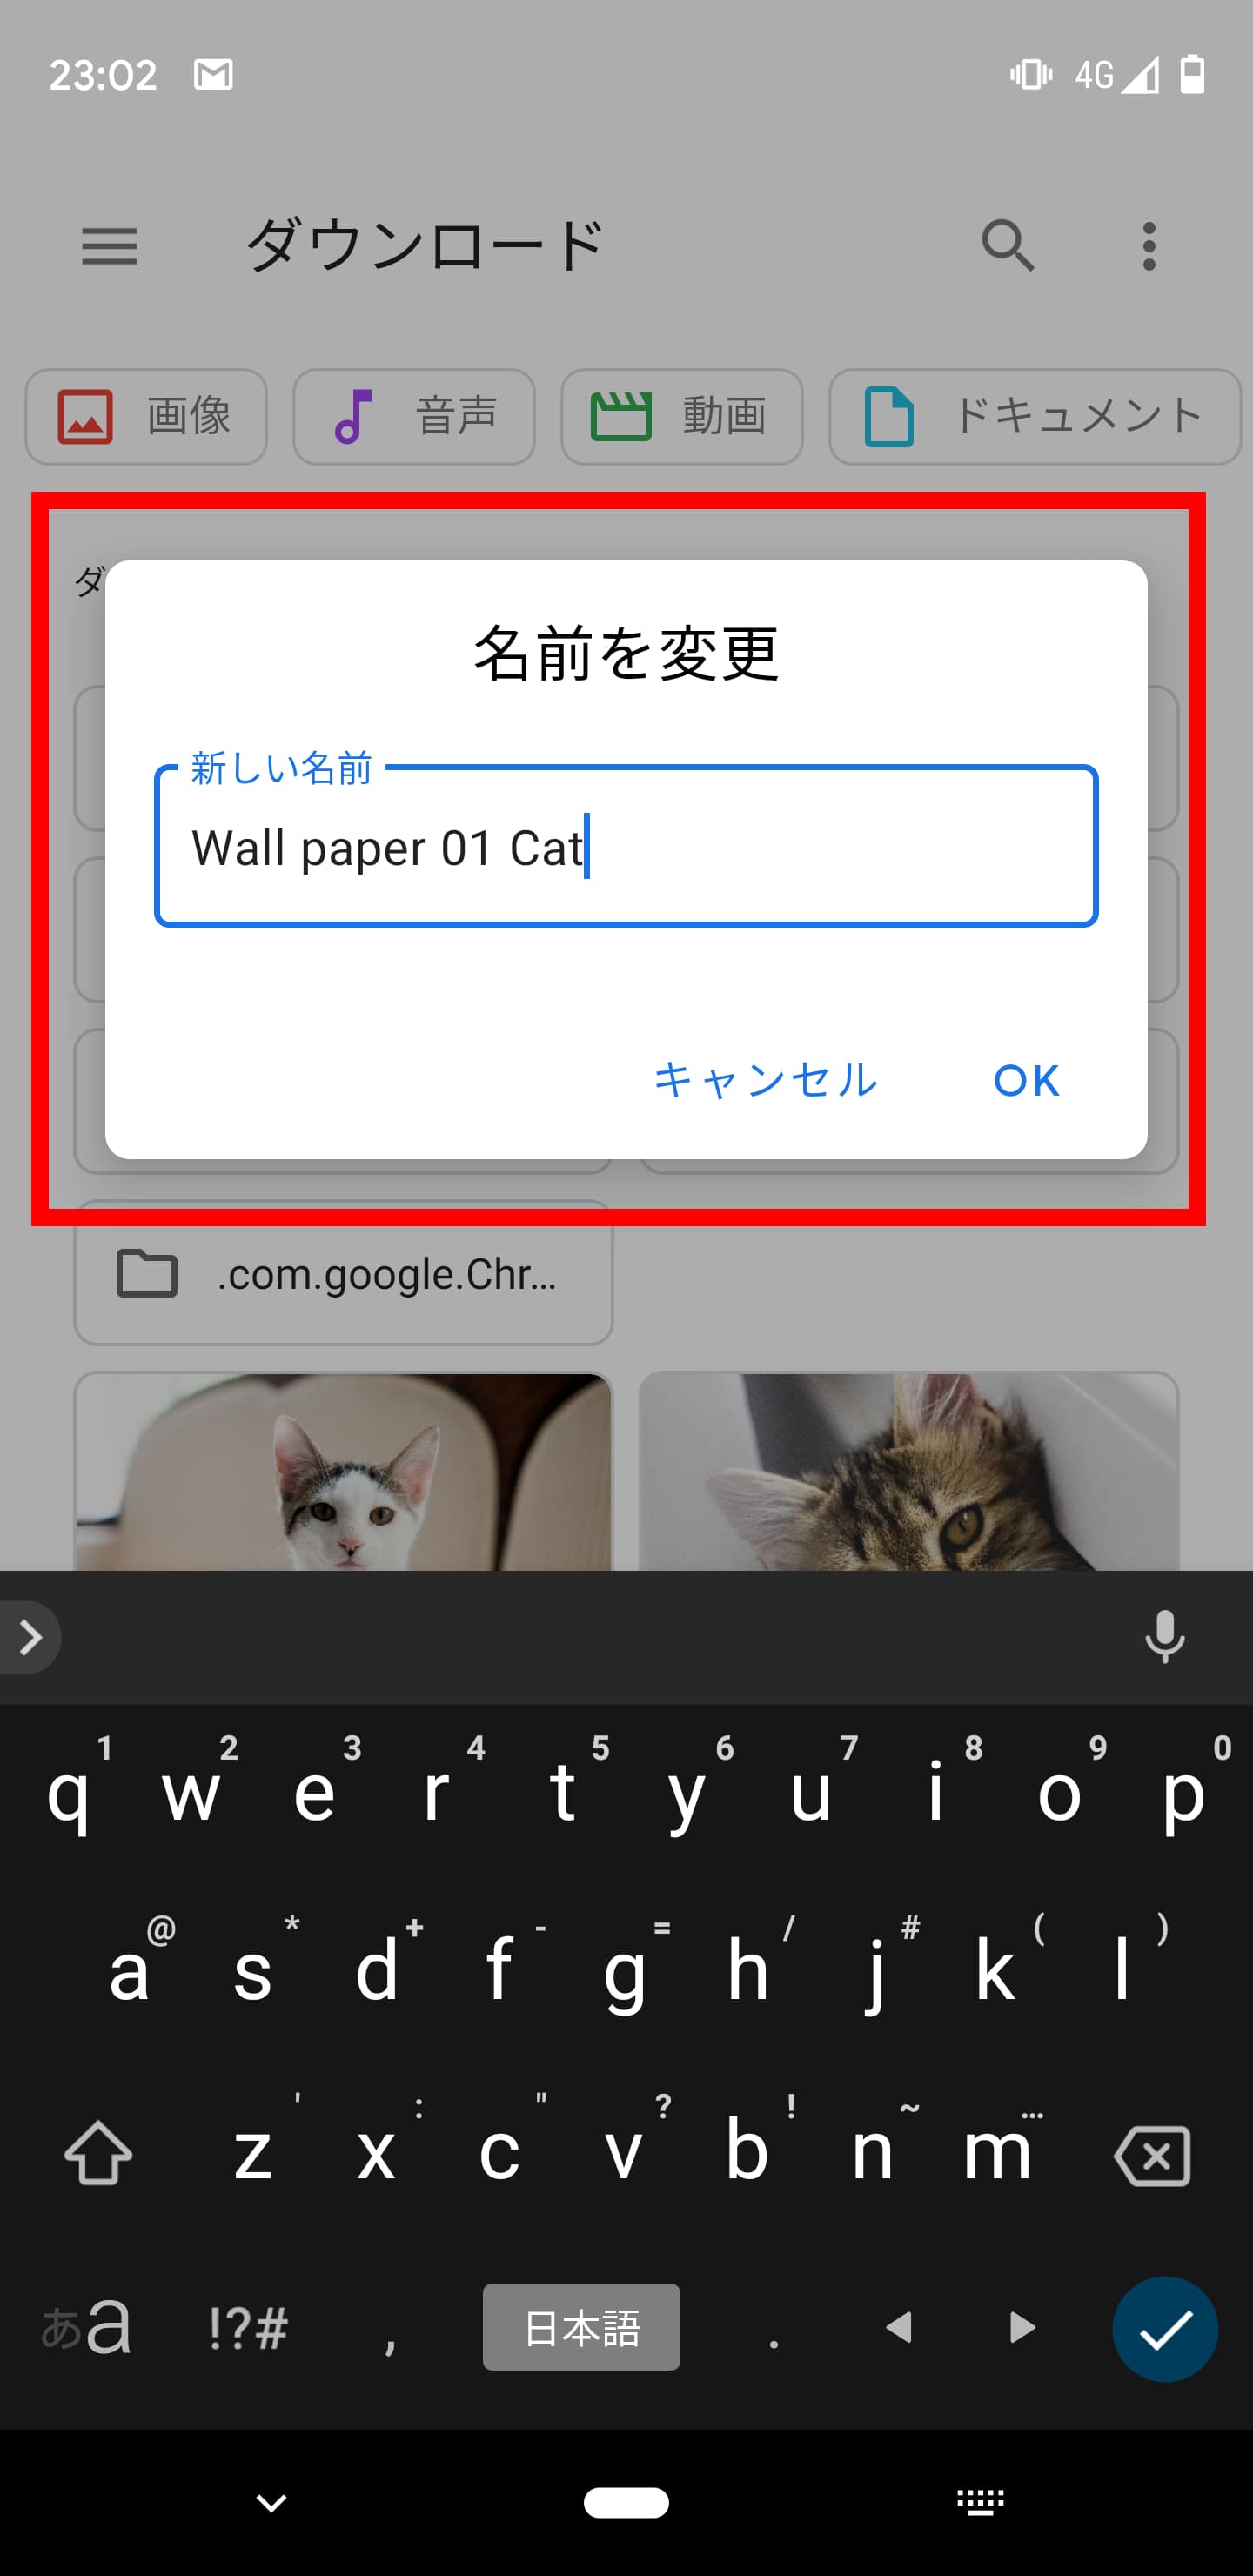 Android 9 10対応 壁紙をランダムに表示する方法 Pixel3 3xlもok 社畜アフィリエイト